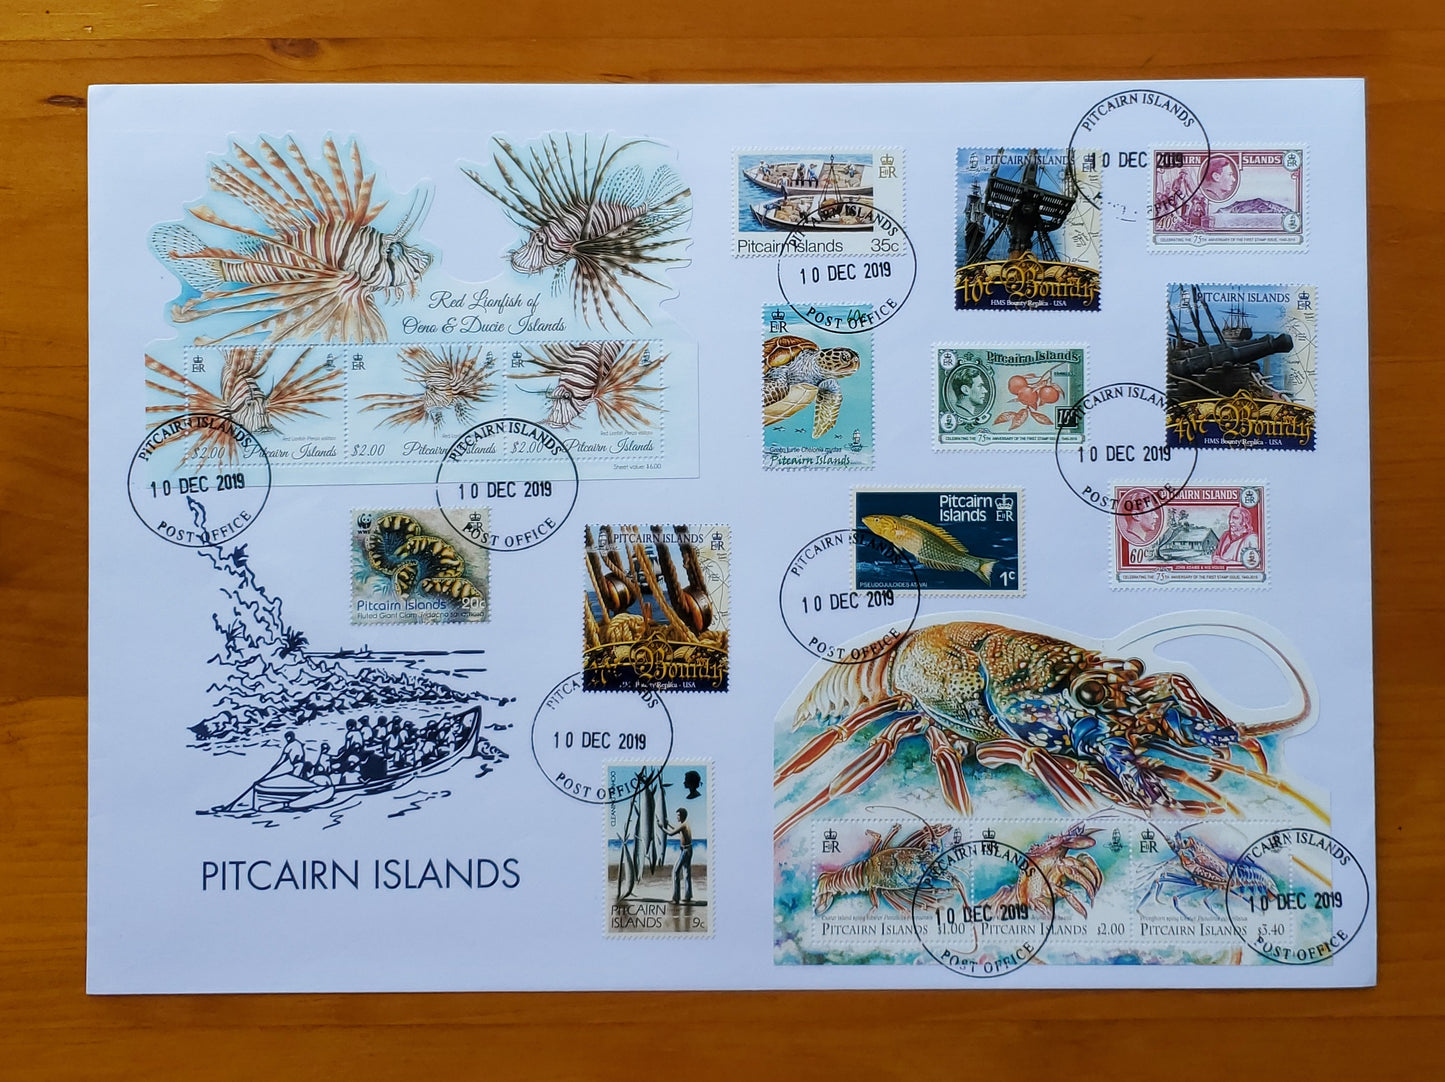 Emisiones de sellos de la Reserva Marina de las Islas Pitcairn - Cangrejos de río y peces león